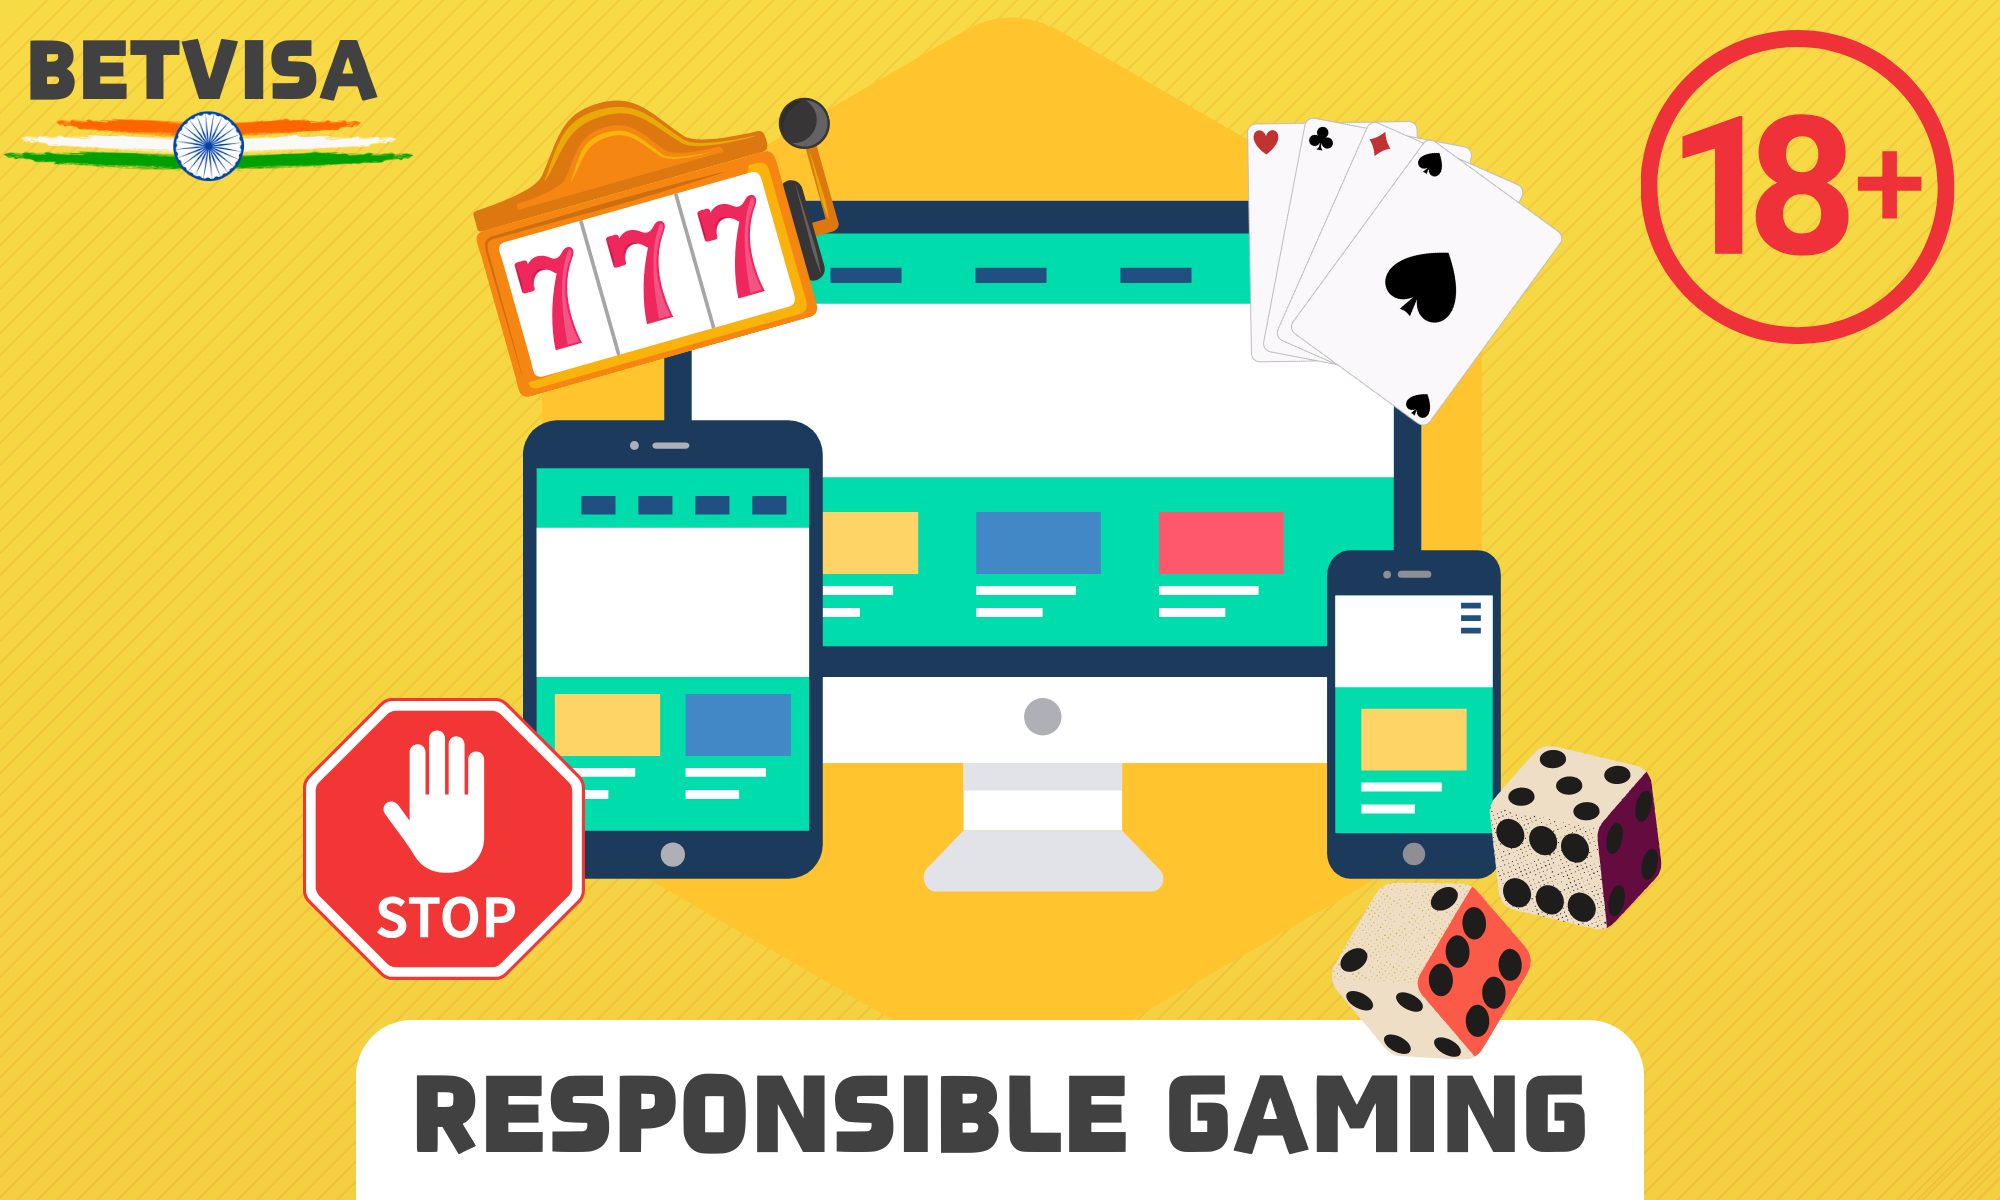 BetVisa supports responsible gambling and guarantees integrity